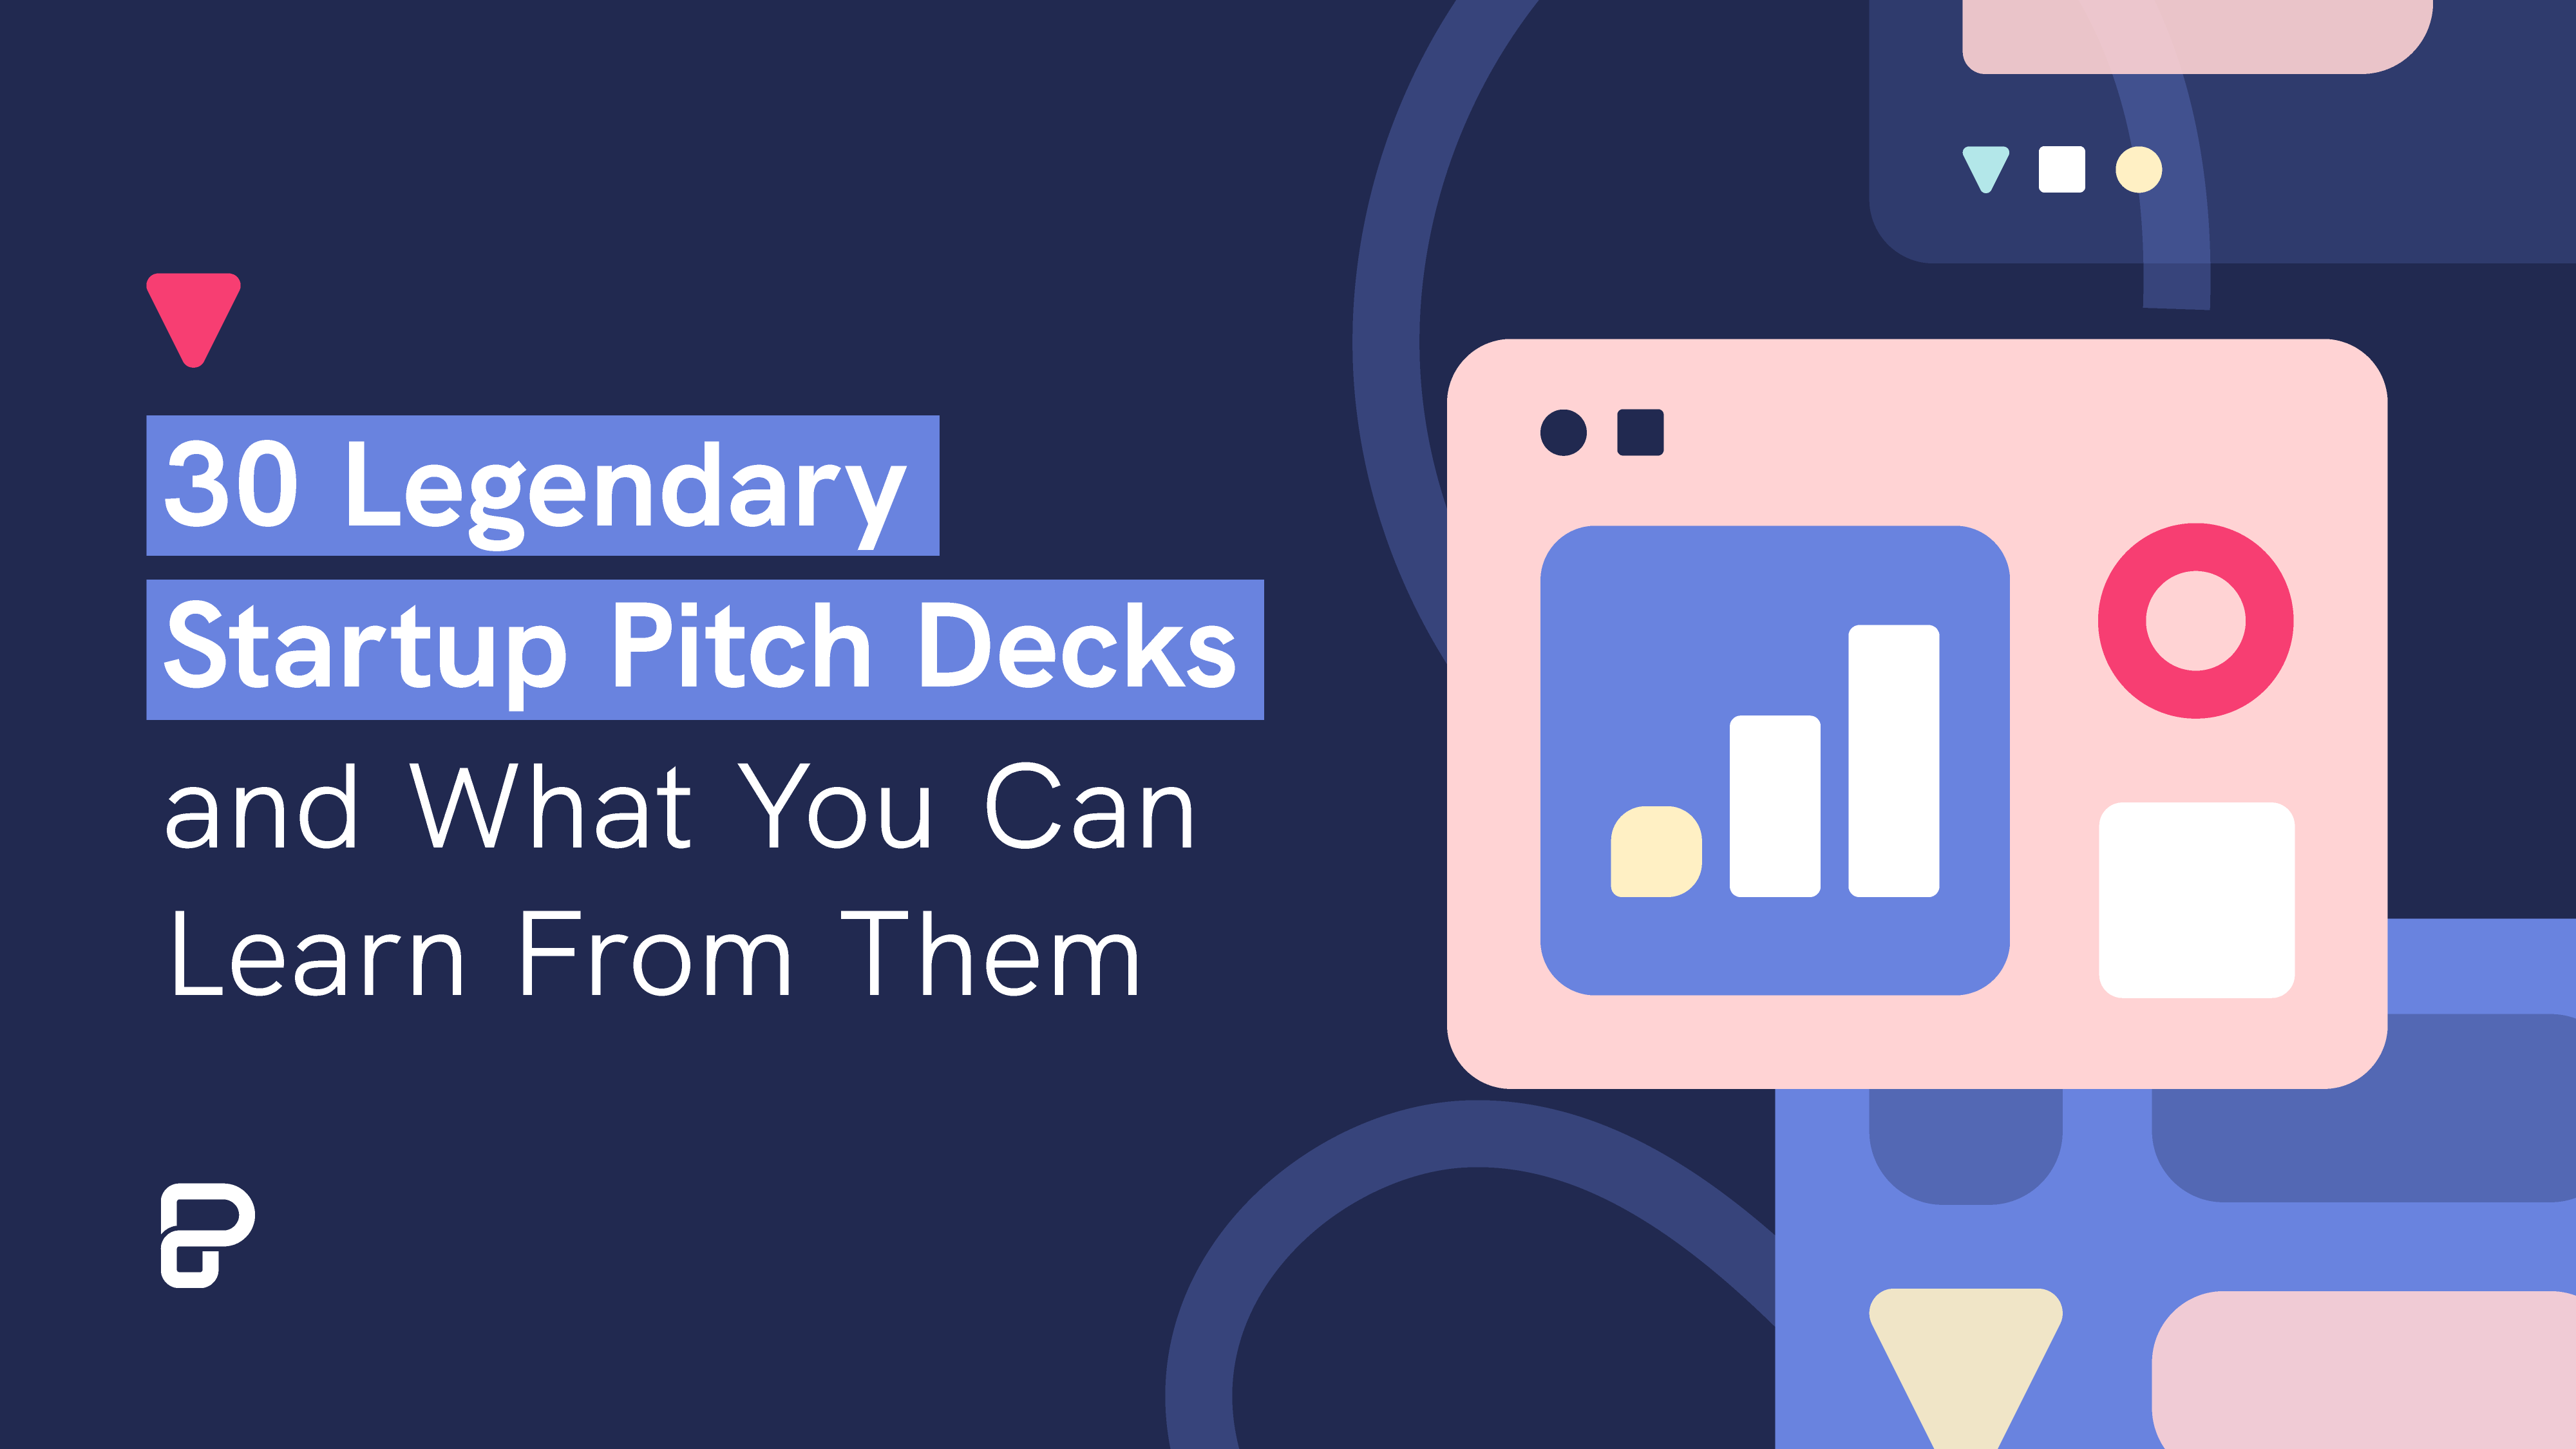 Os startups pitch decks lendários e o que se pode aprender com eles